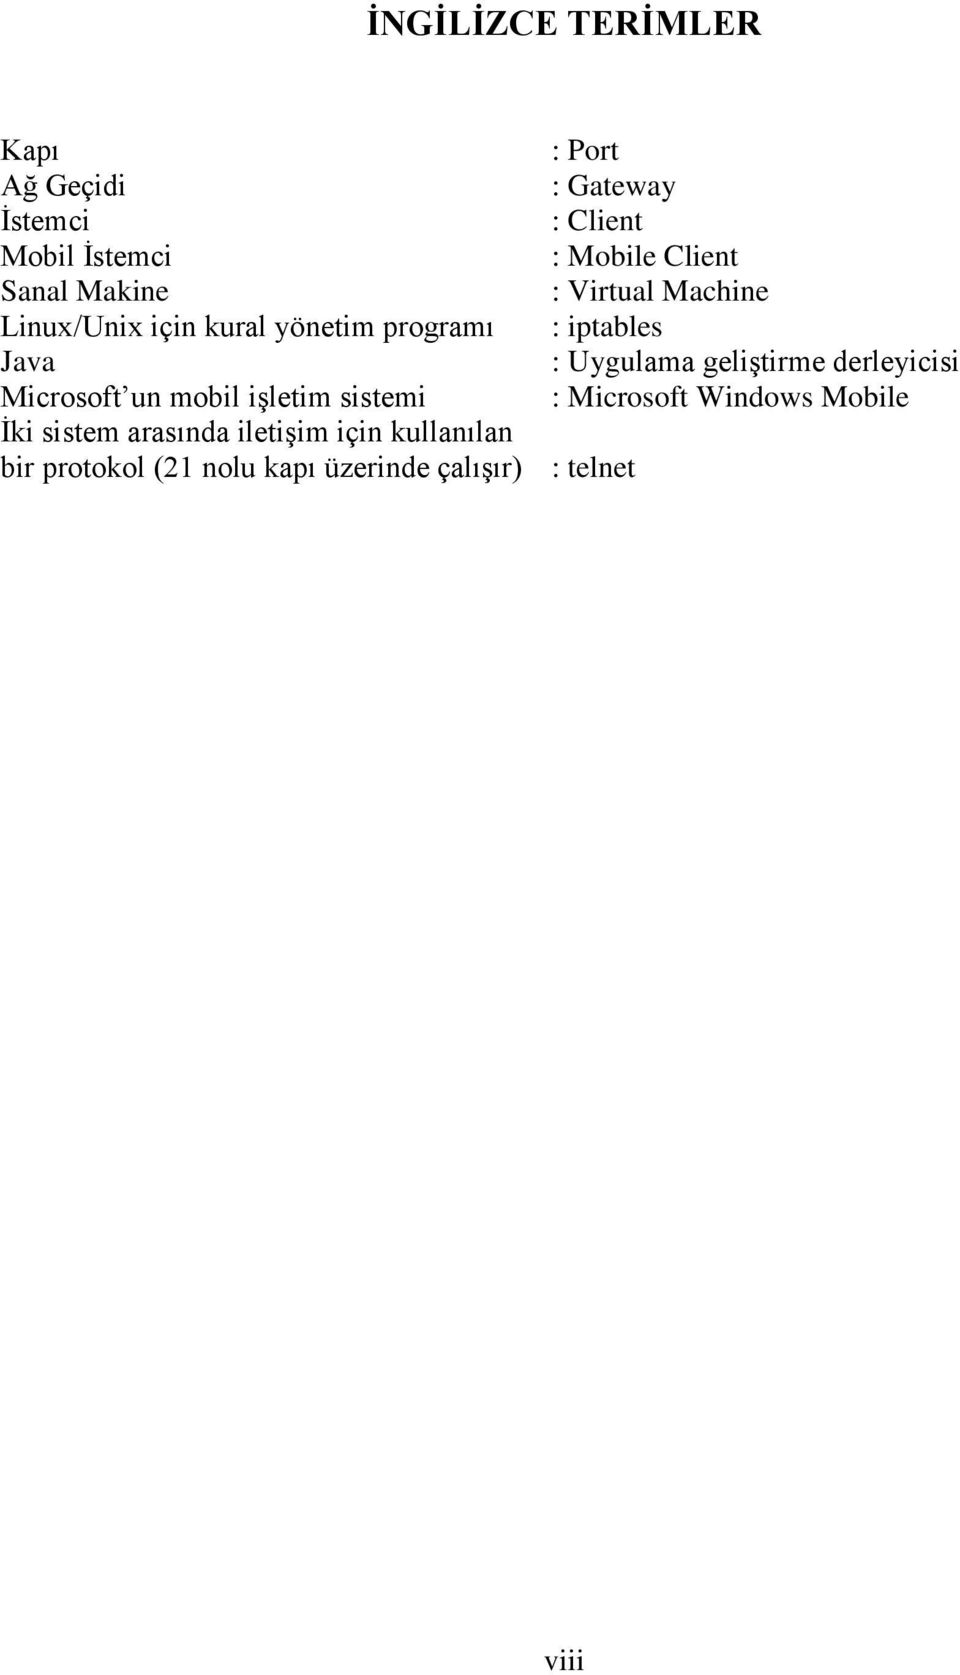 Uygulama geliģtirme derleyicisi Microsoft un mobil iģletim sistemi : Microsoft Windows Mobile